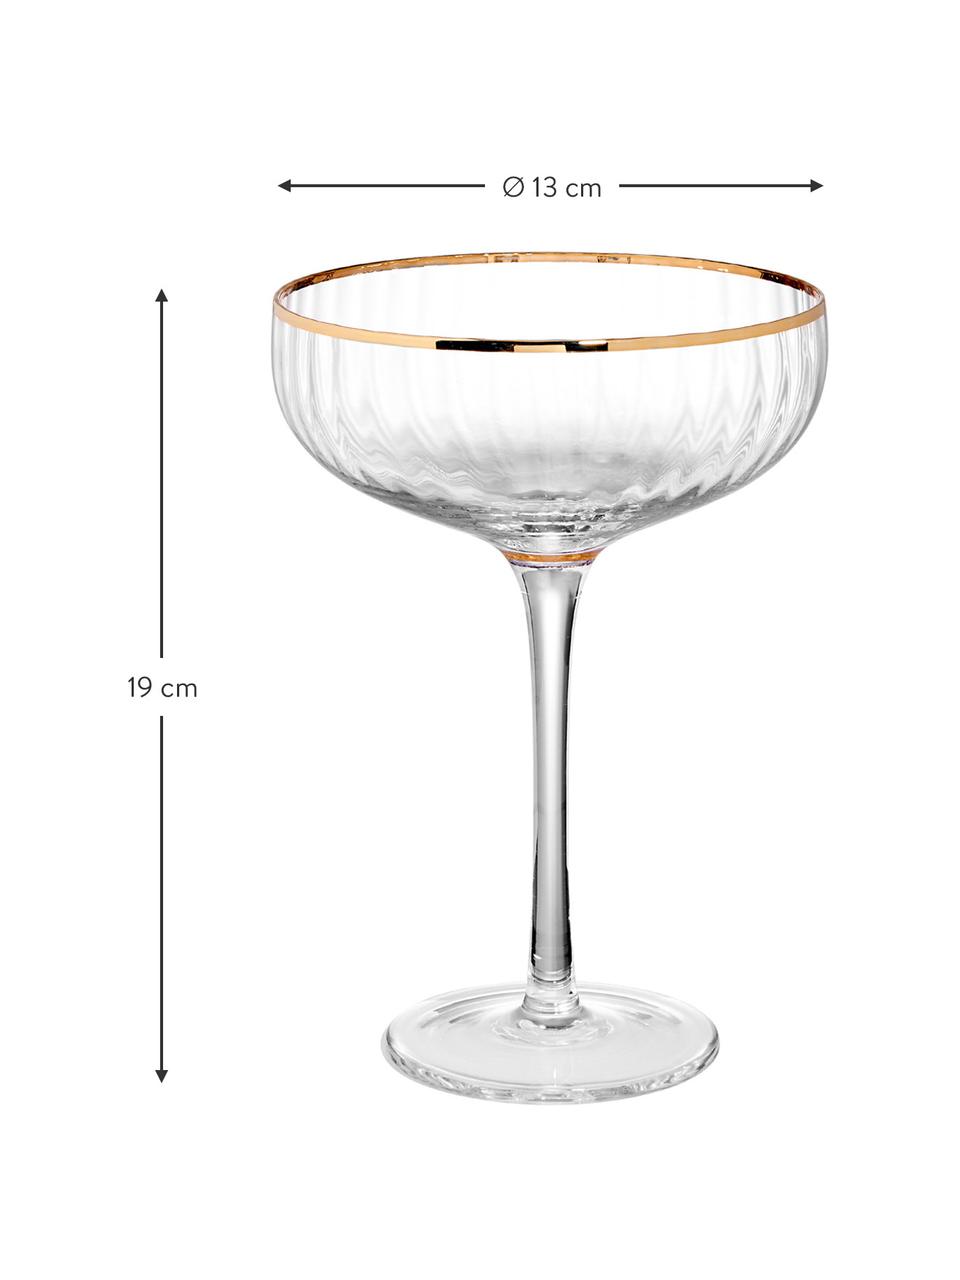 Champagnerschalen Golden Twenties mit Goldrand, extra groß, 400 ml , 2 Stück, Glas, Transparent, Goldfarben, Ø 13 x H 19 cm, 400 ml